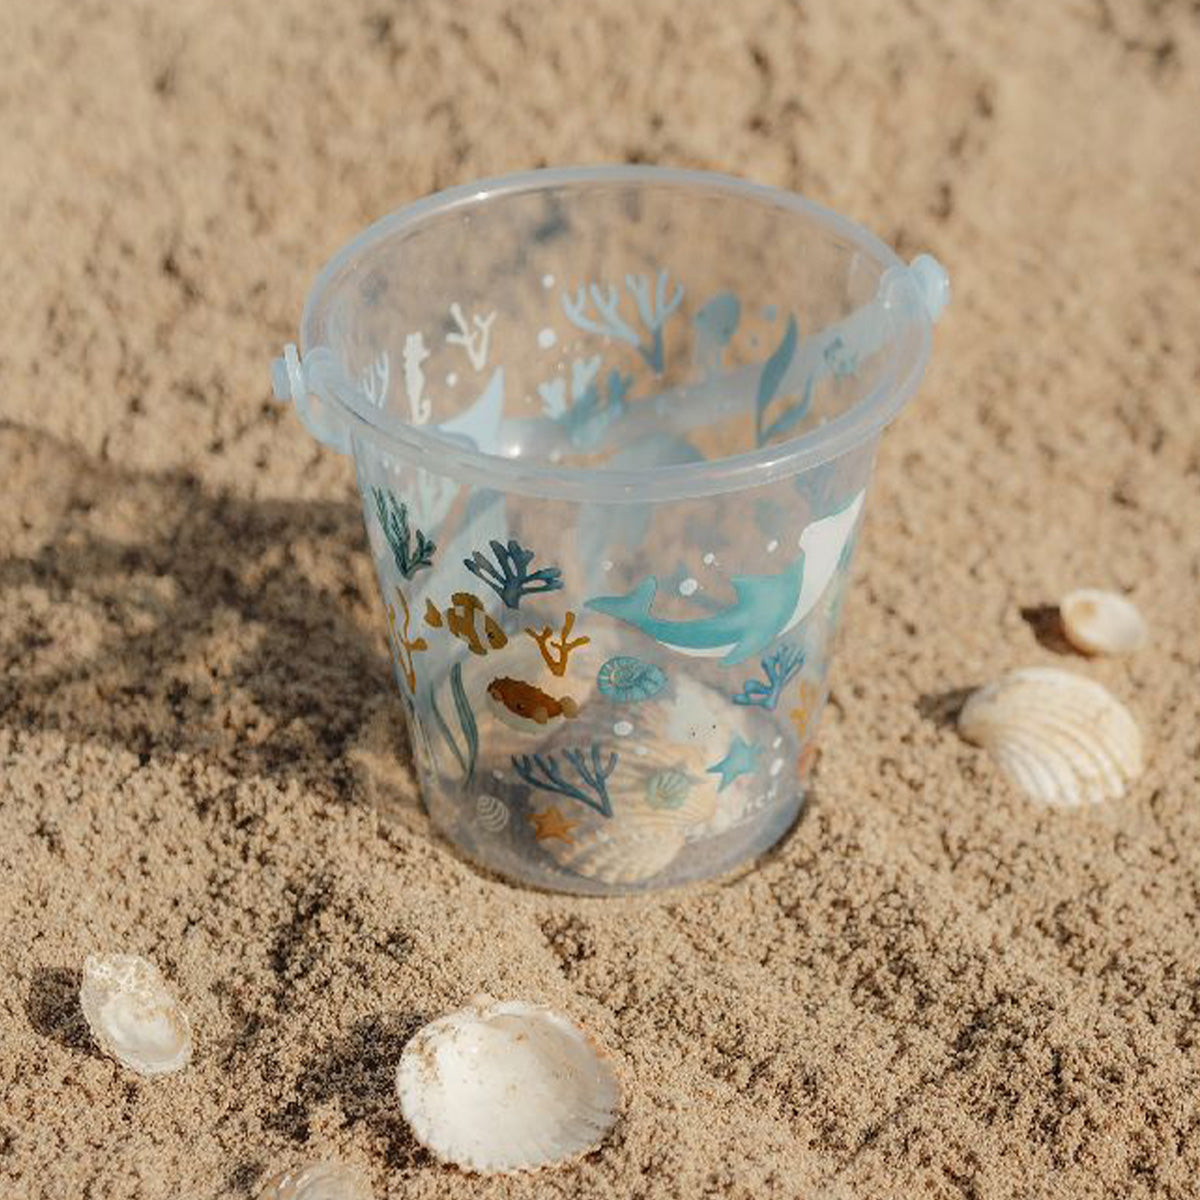 Laat je kindje heerlijk spelen in het zand met deze vrolijke ocean dreams emmer in het blauw van het merk Little Dutch. Deze leuke emmer is een essentieel accessoire voor zand- en wateravonturen op het strand, zwembad of achtertuin. VanZus